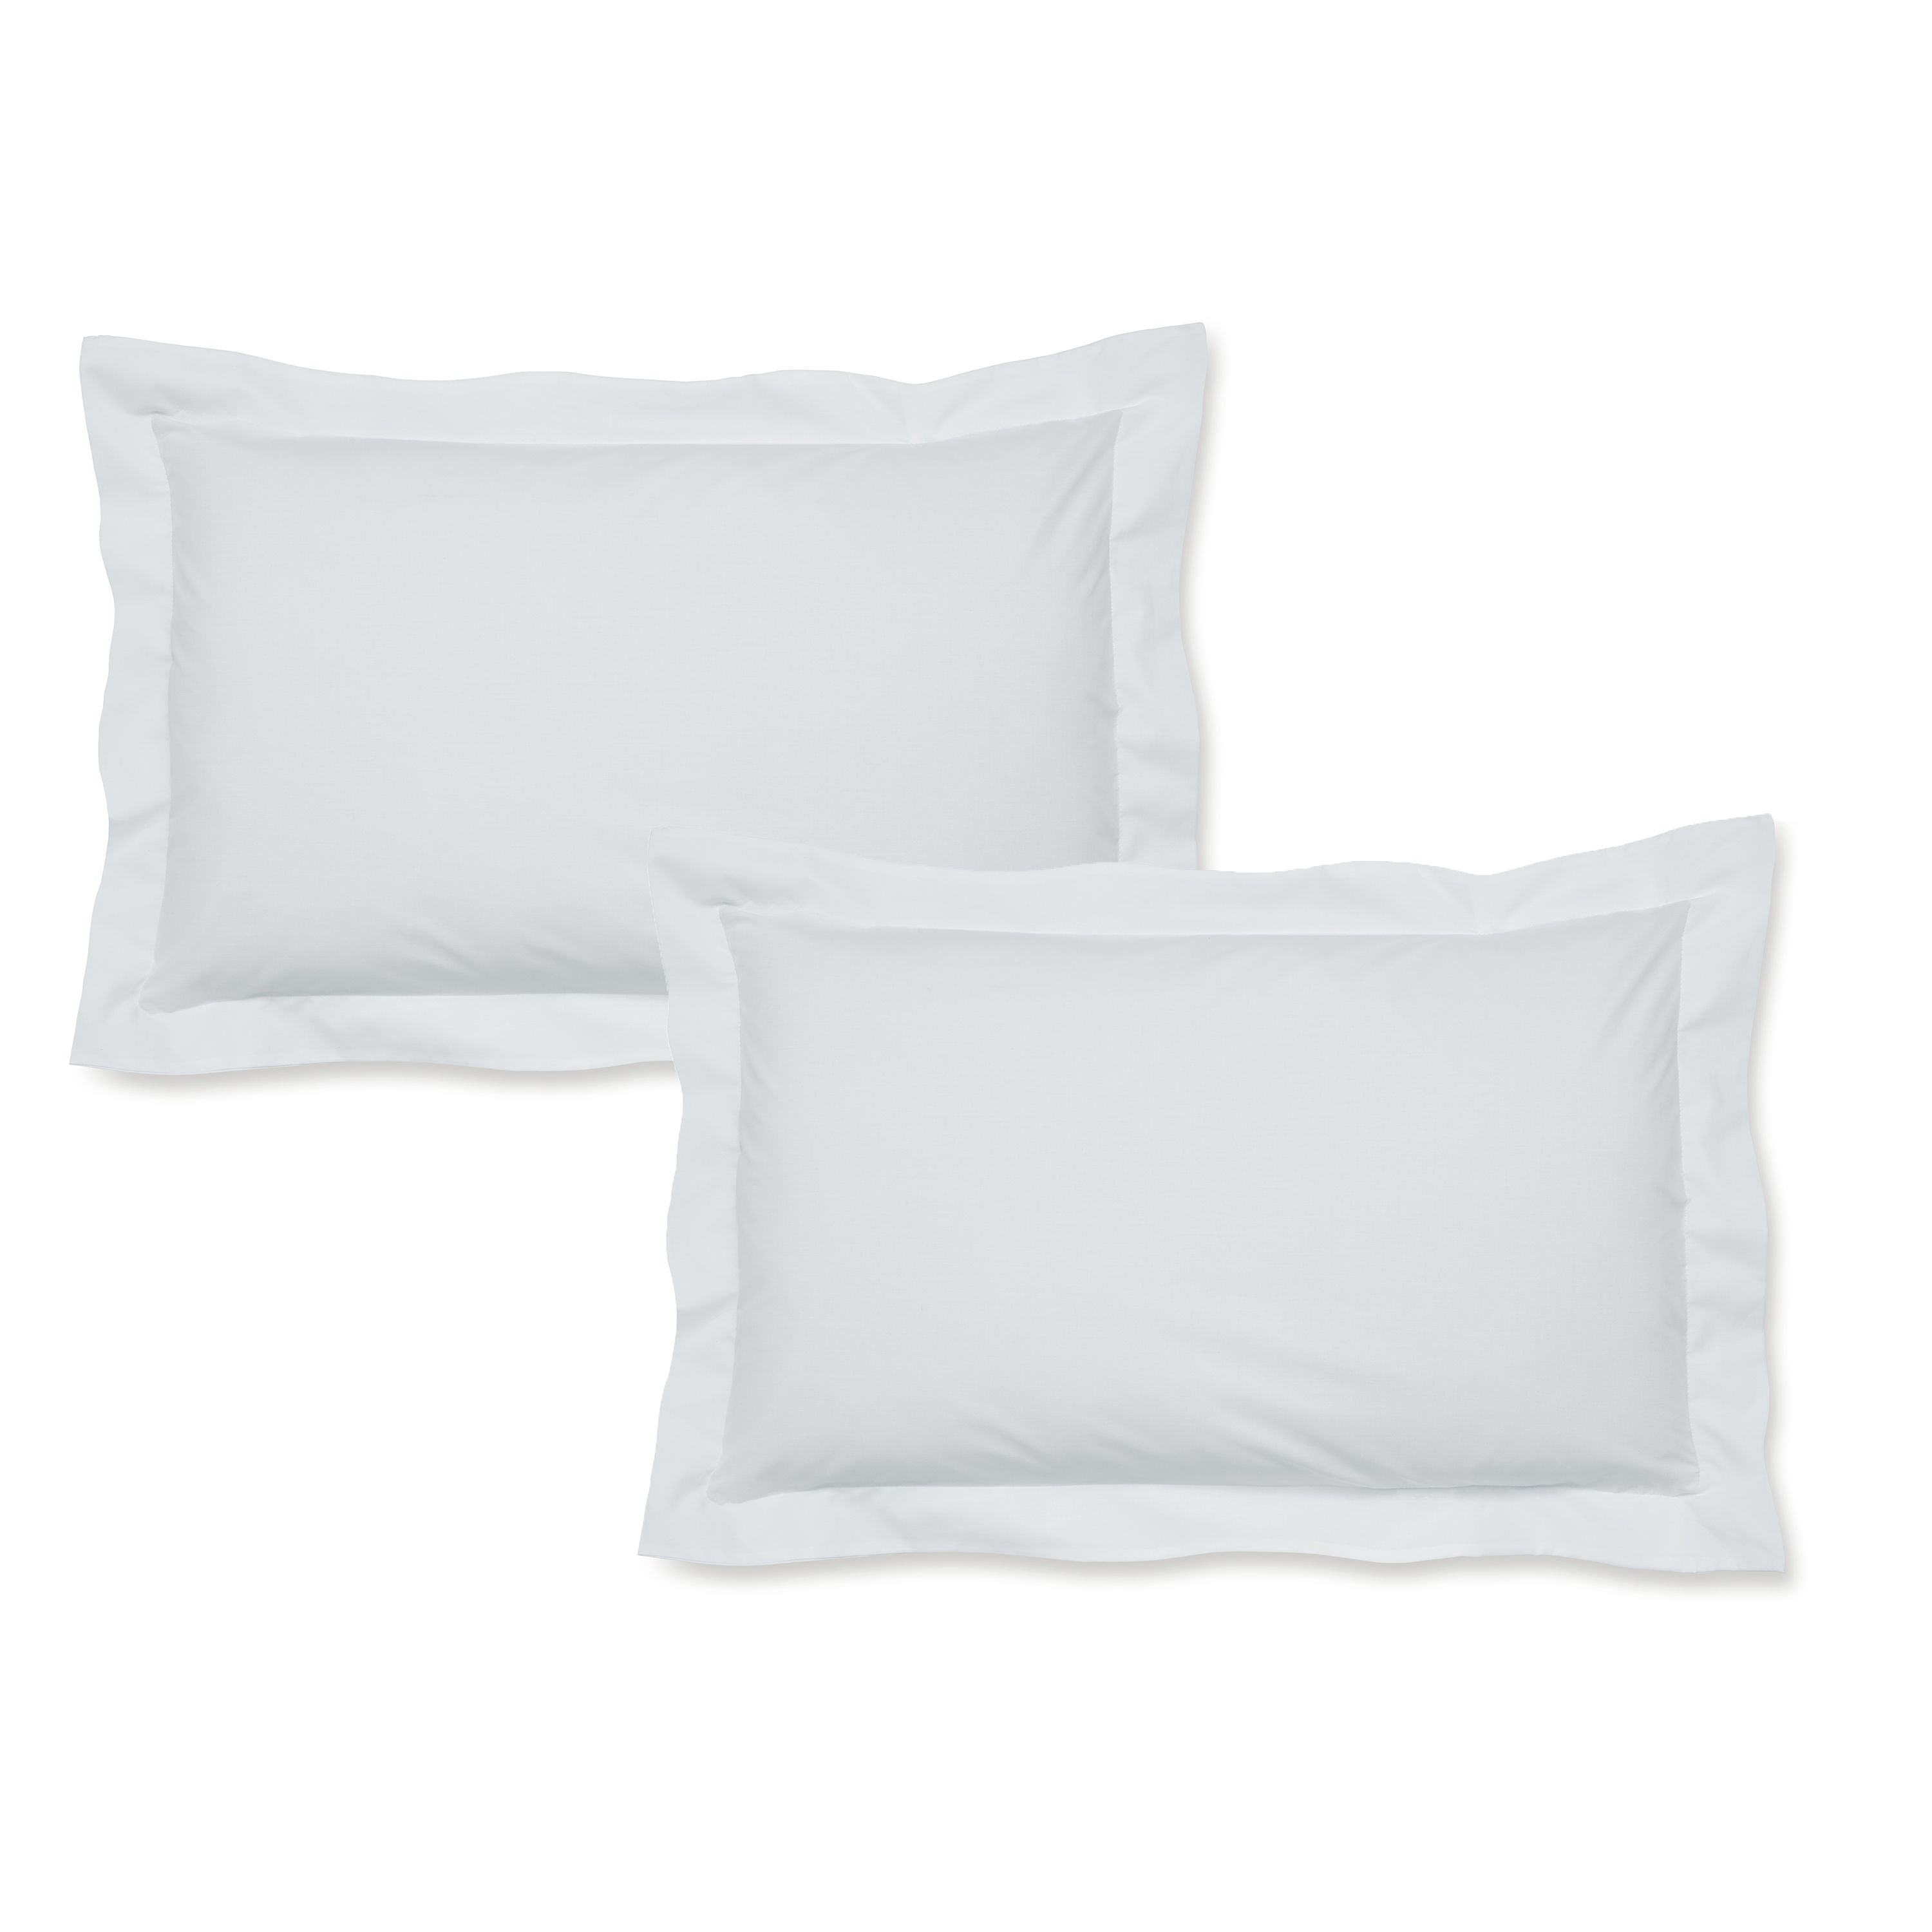 Oxford Pillowcase Pairs - White, Cream & Grey